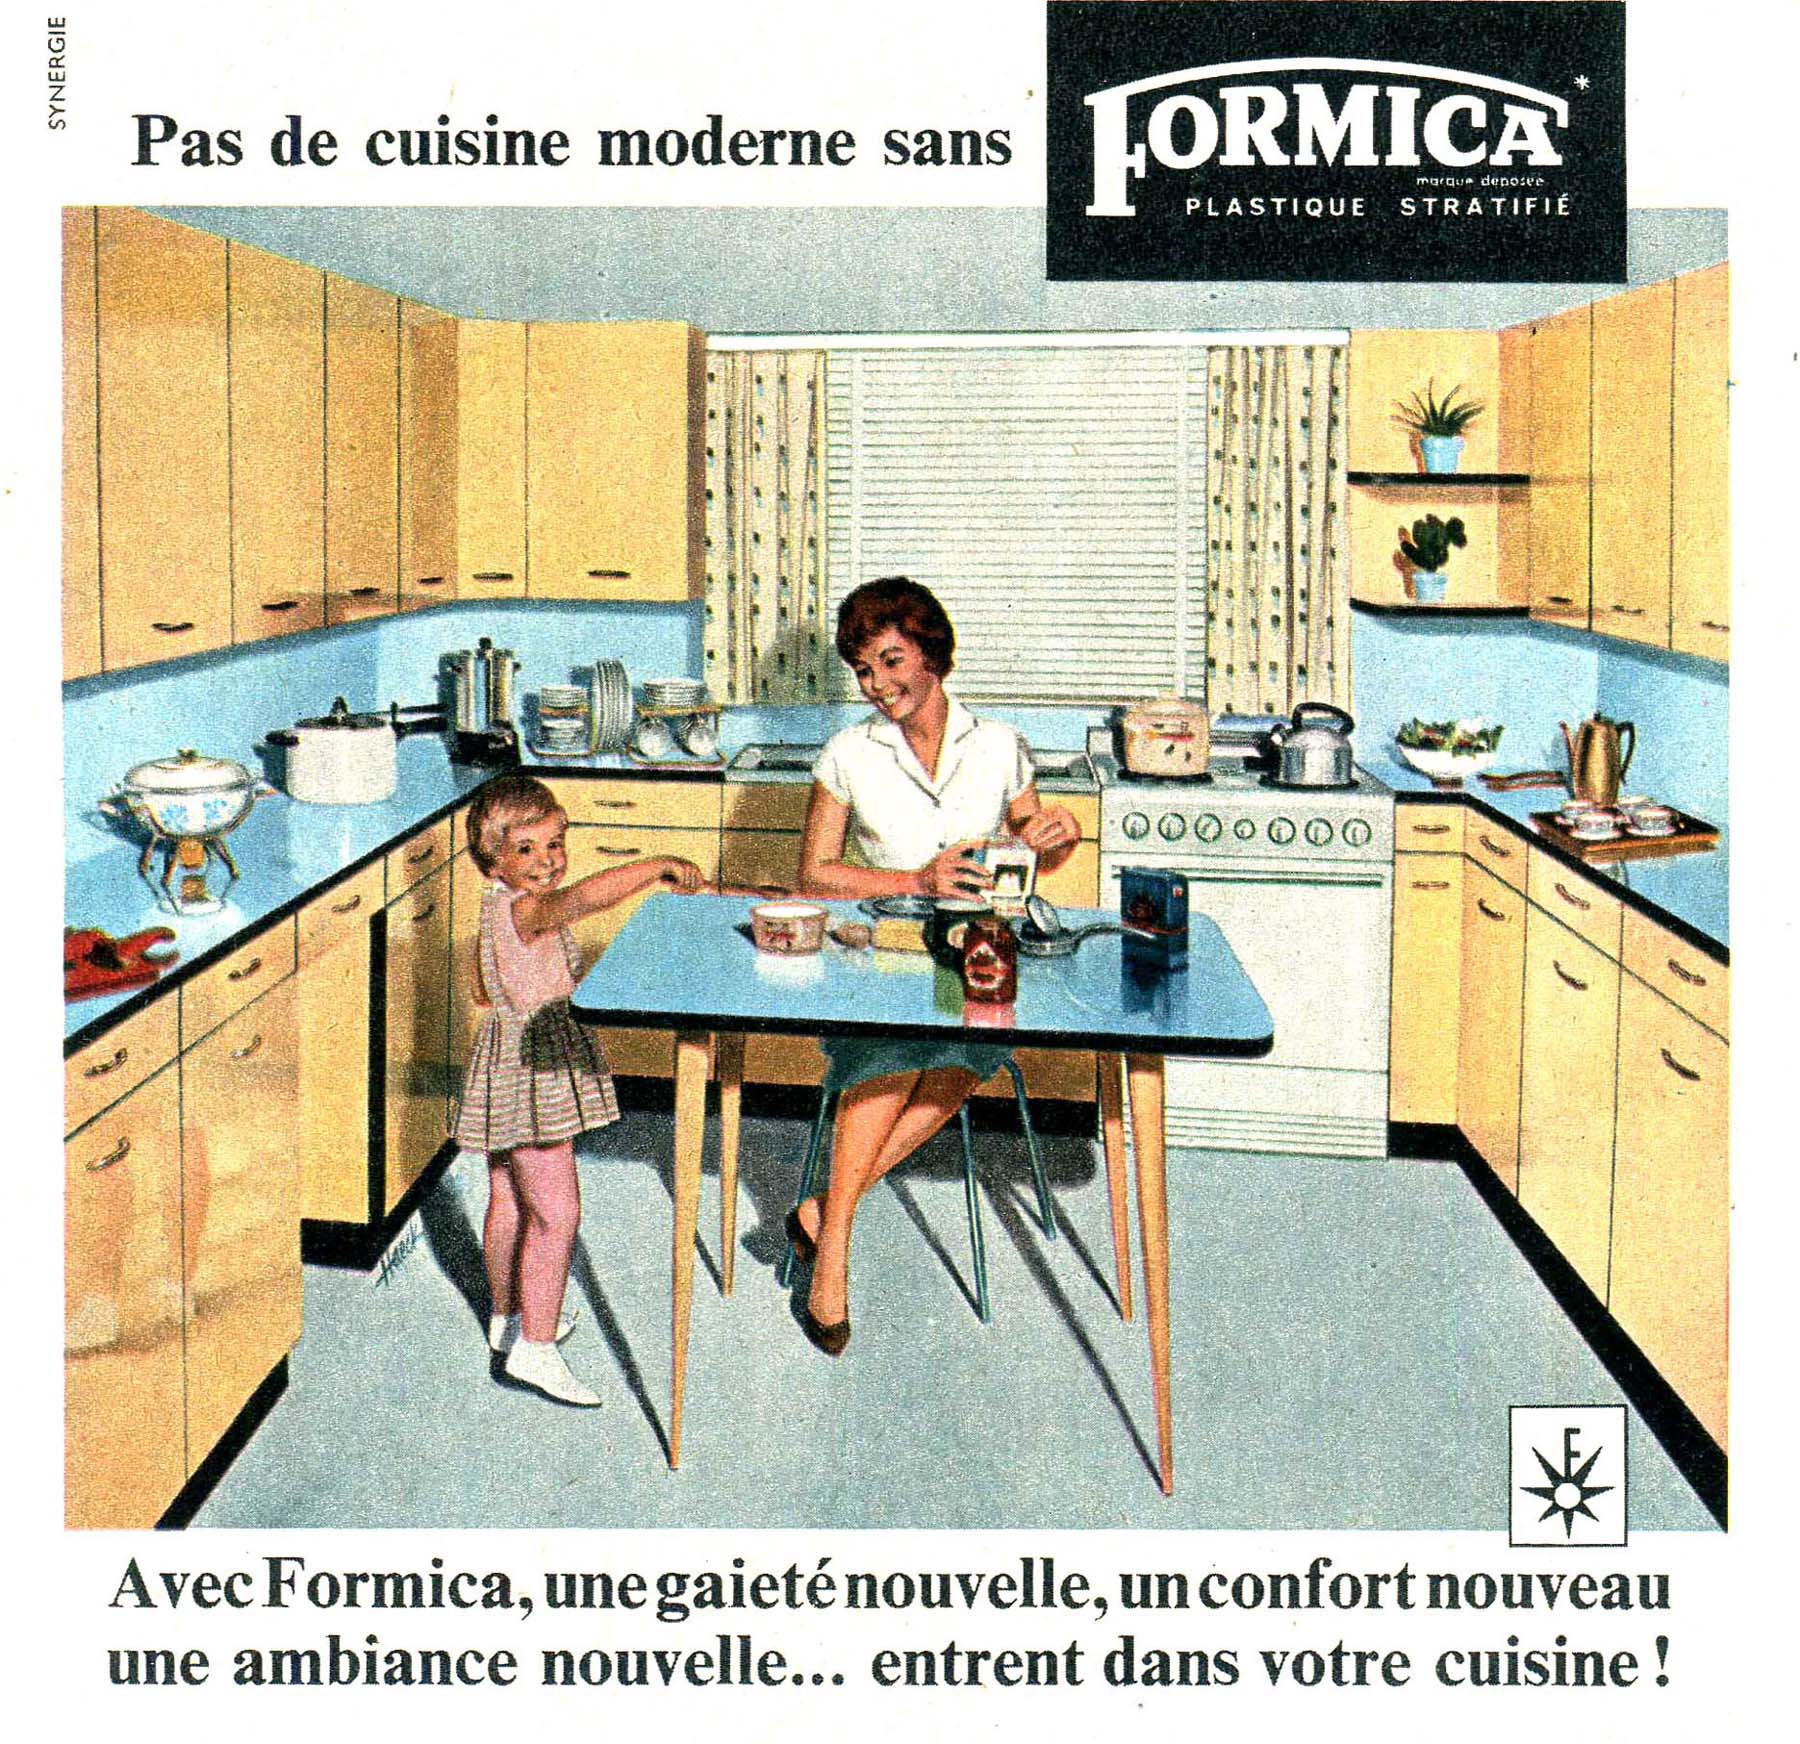 Pas de cuisine moderne sans Formica réclame de 1959